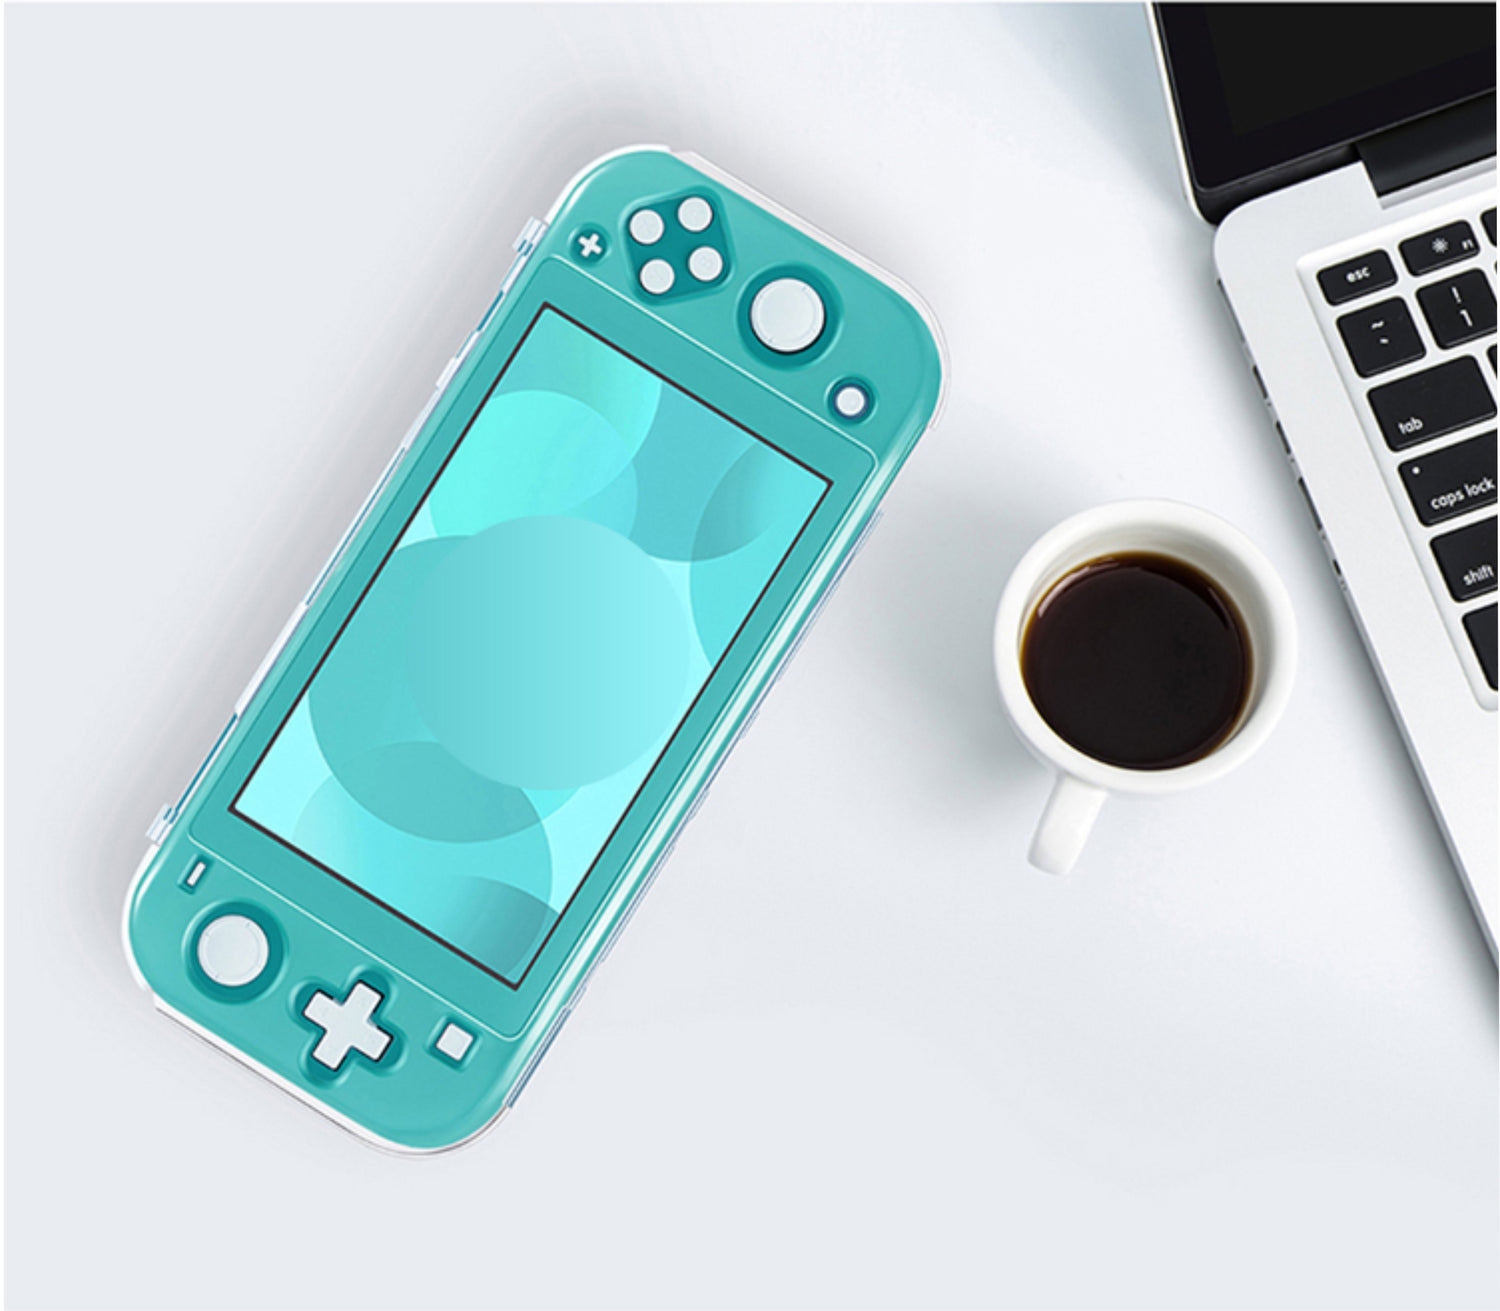 Funda Nintendo Switch LITE + Accesorios - TiendaGeek.com